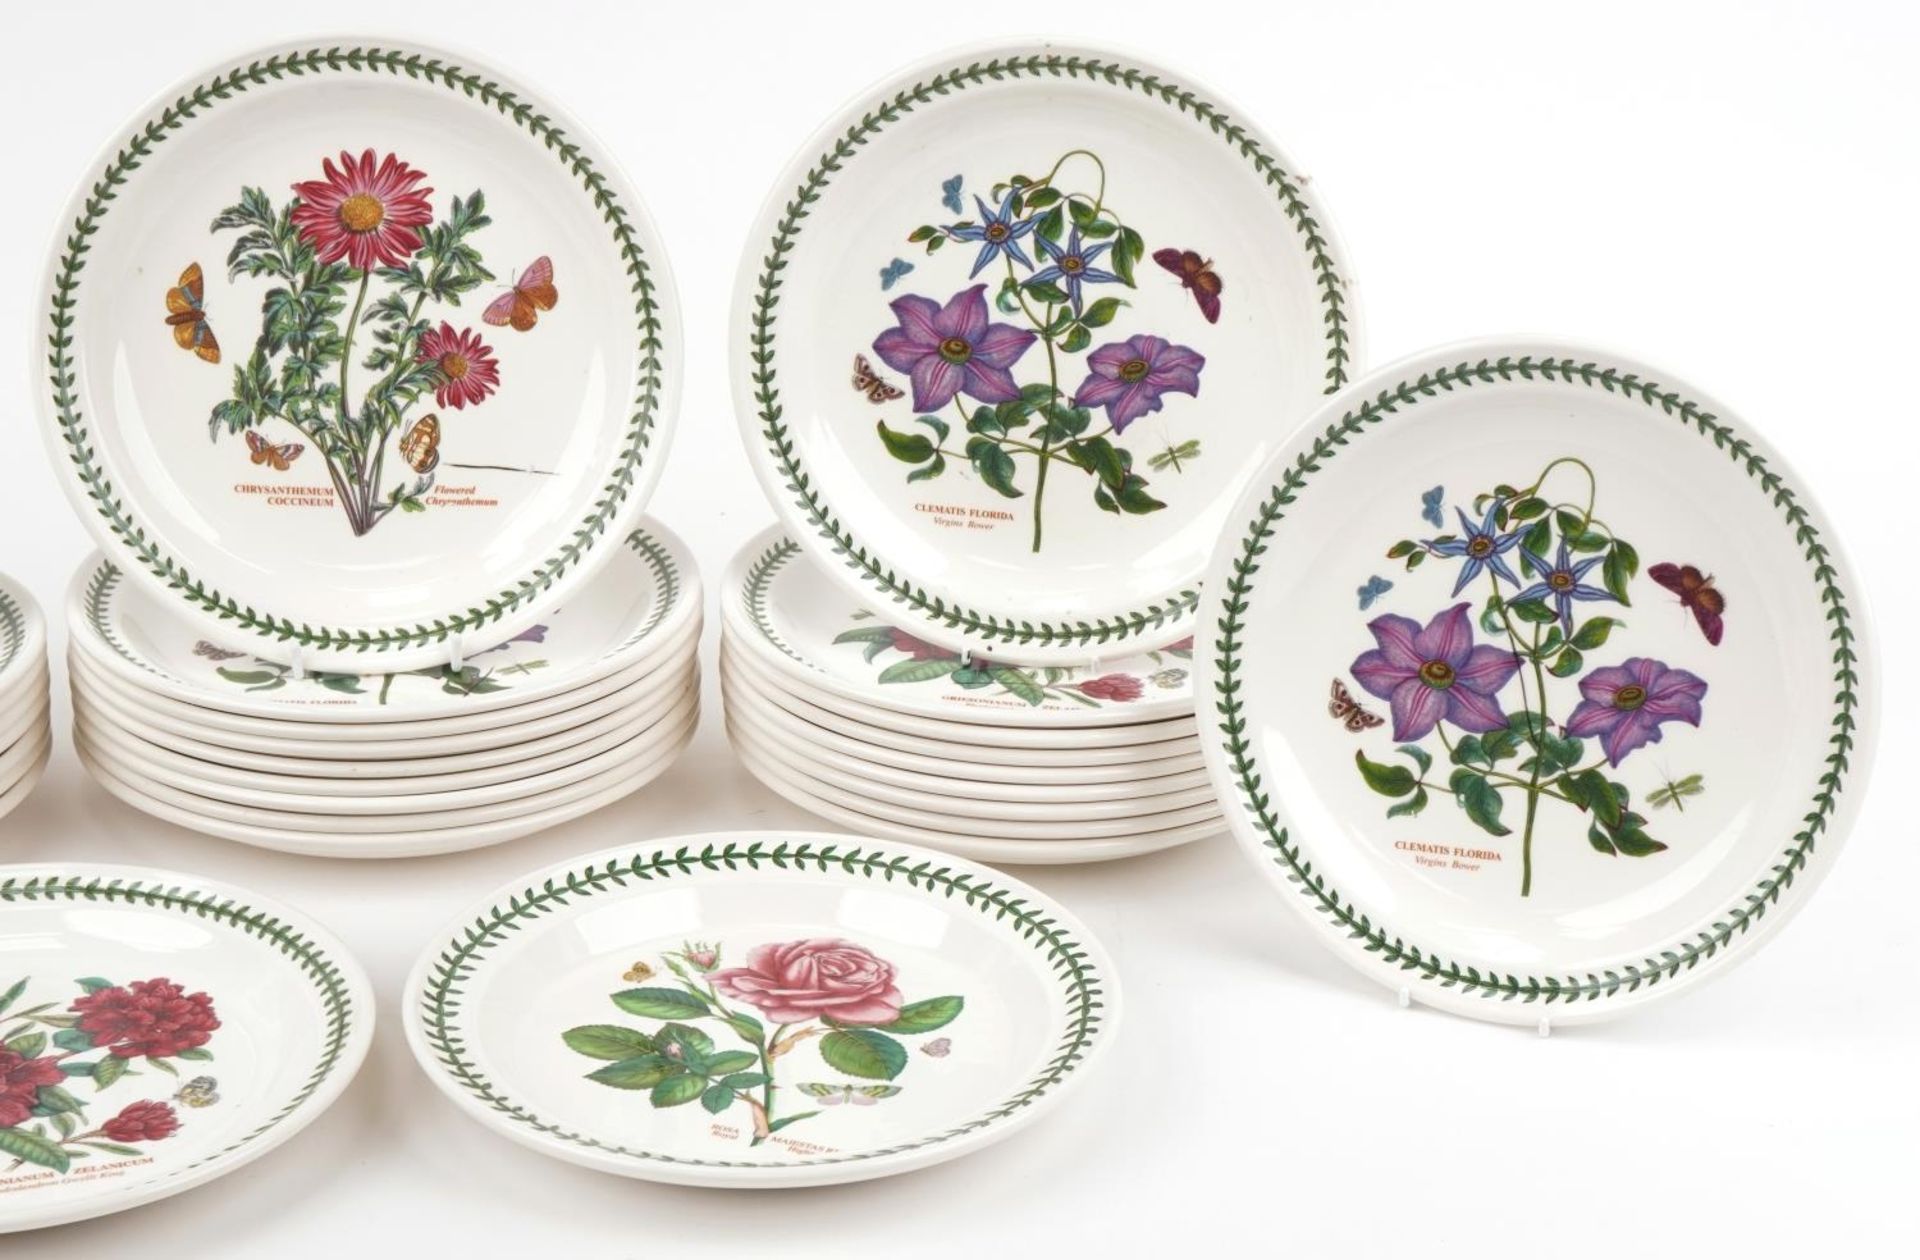 Thirty Portmeirion Botanic Garden dinner plates, 27cm in diameter - Image 6 of 8